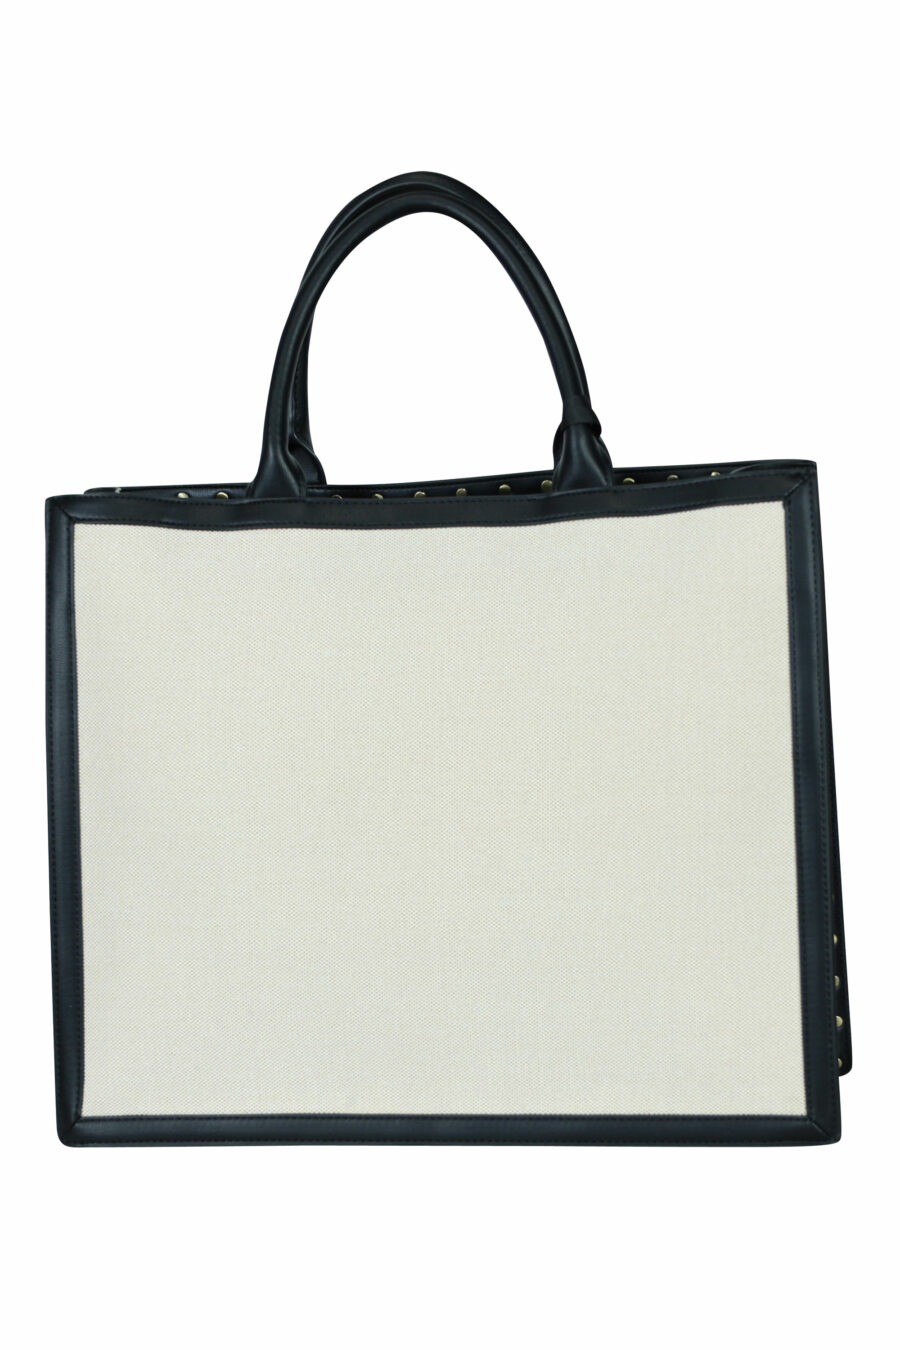 Tote bag black with circular "c" logo - 8052672642431 2